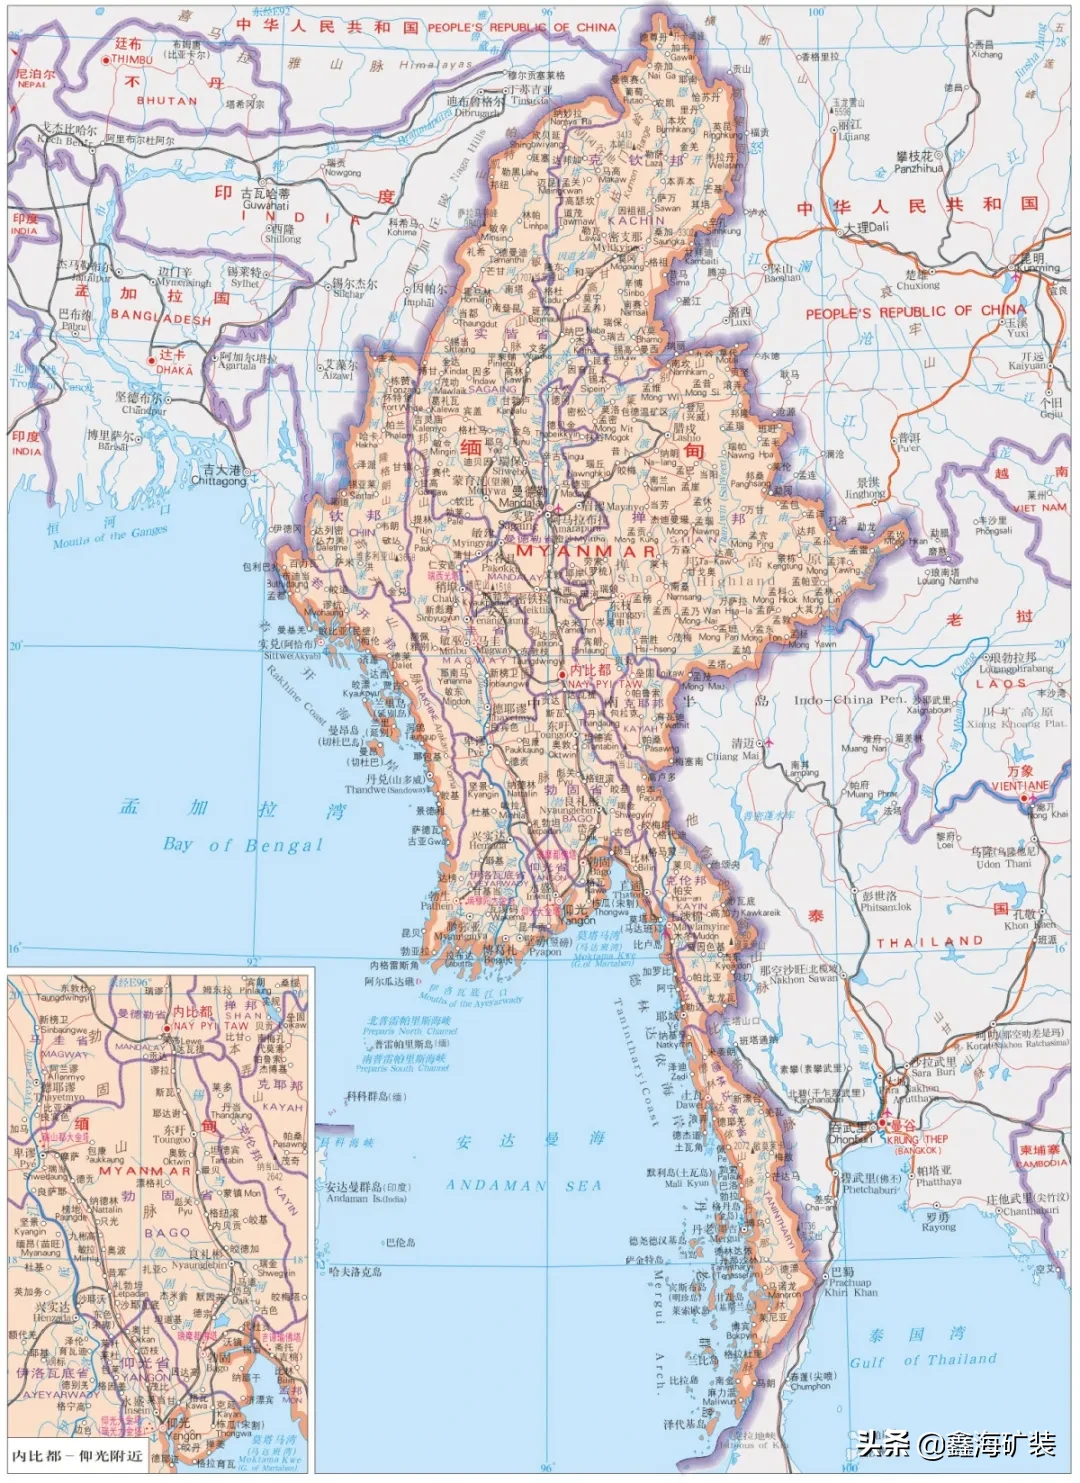 【东南亚】缅甸·矿业开发现状及投资策略